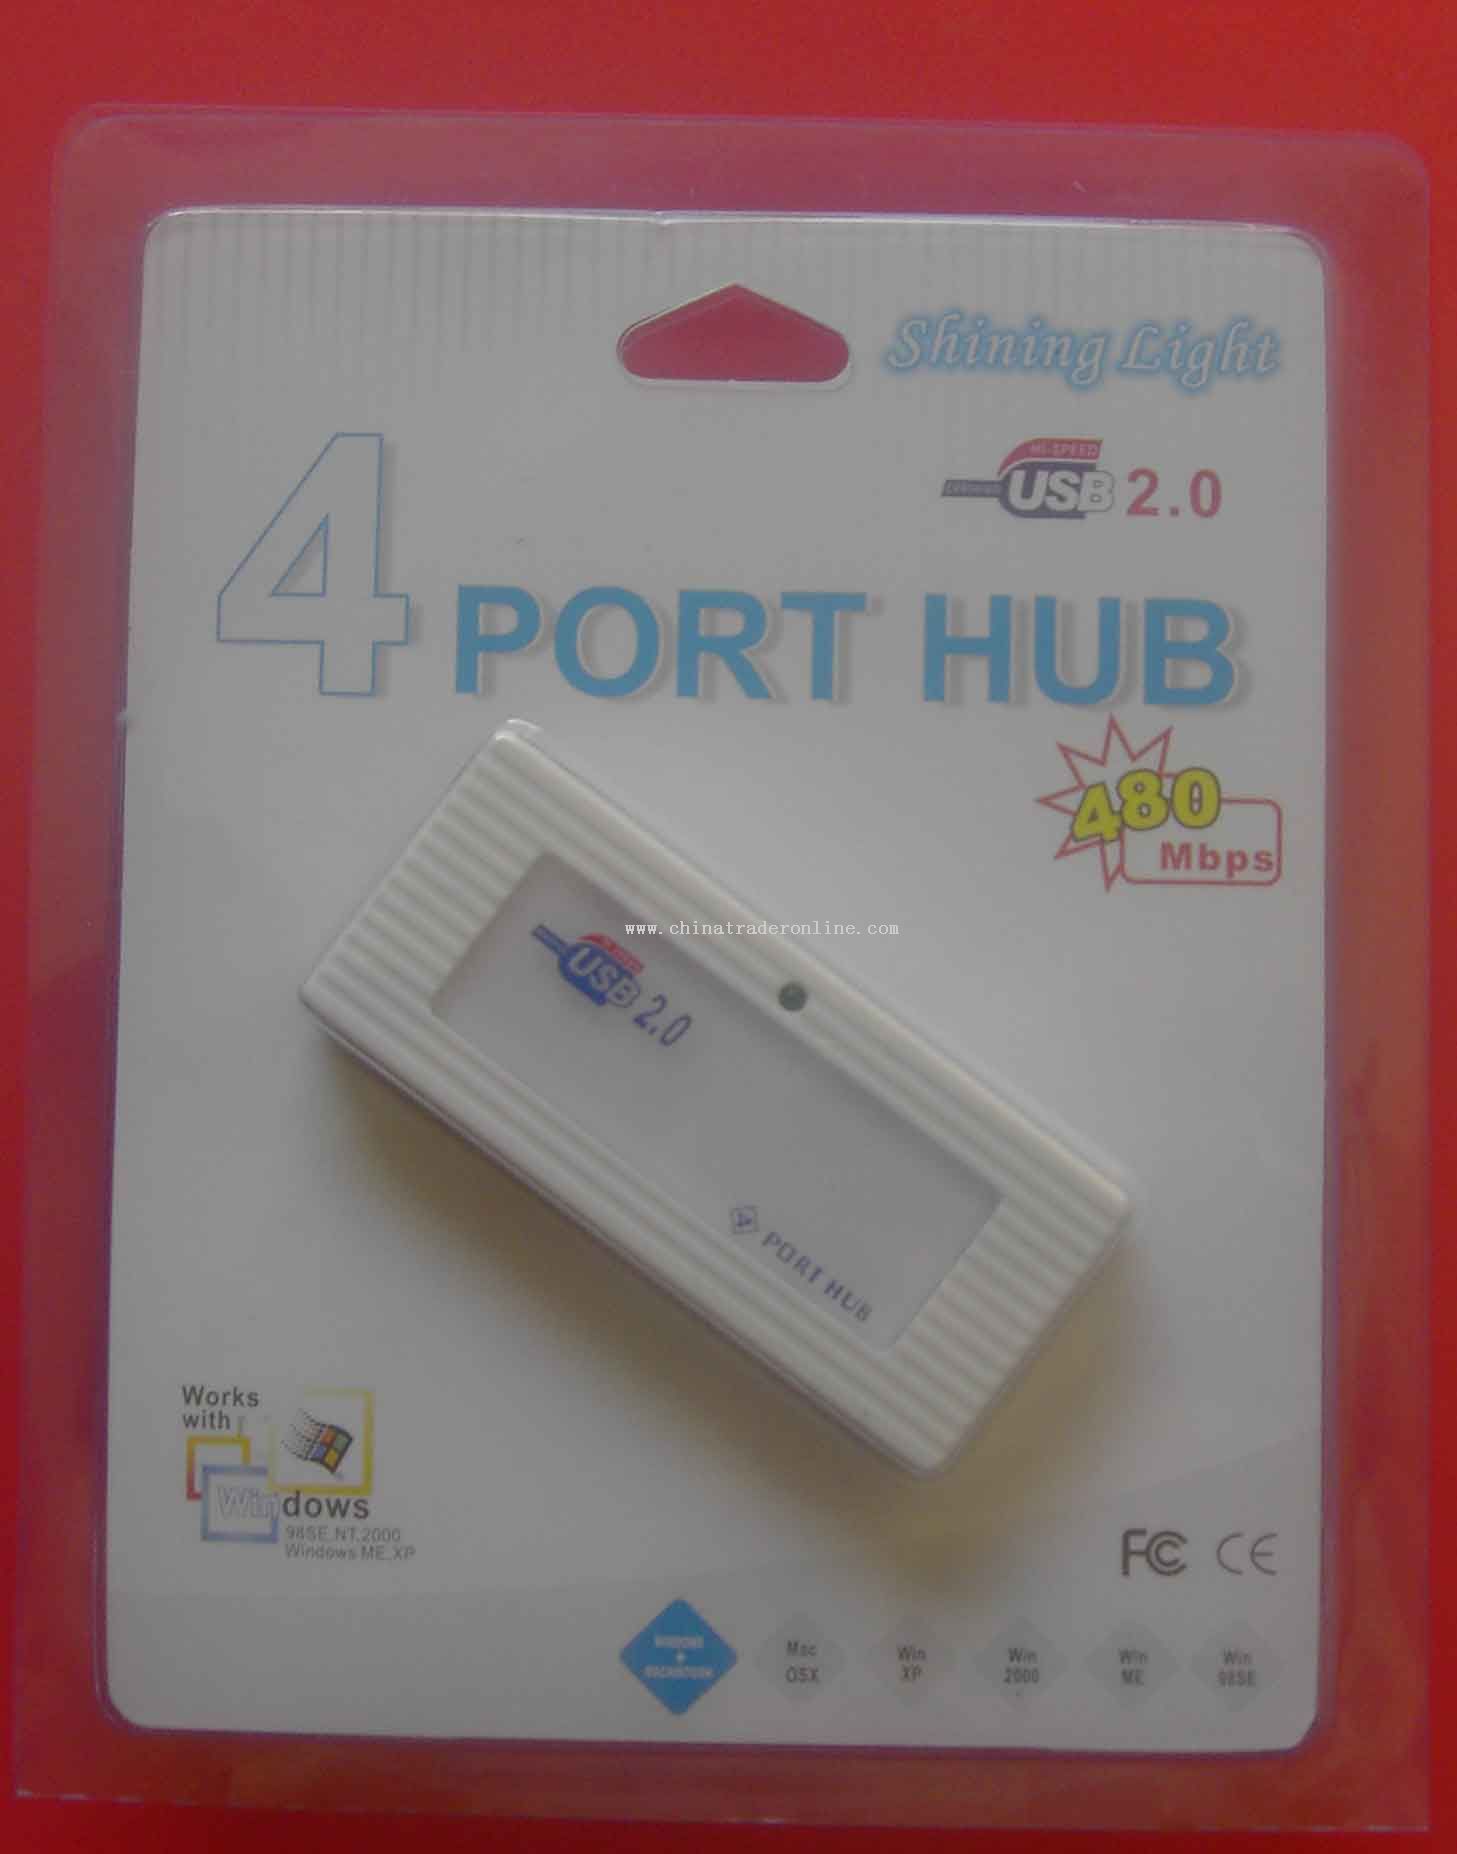 USB HUB from China